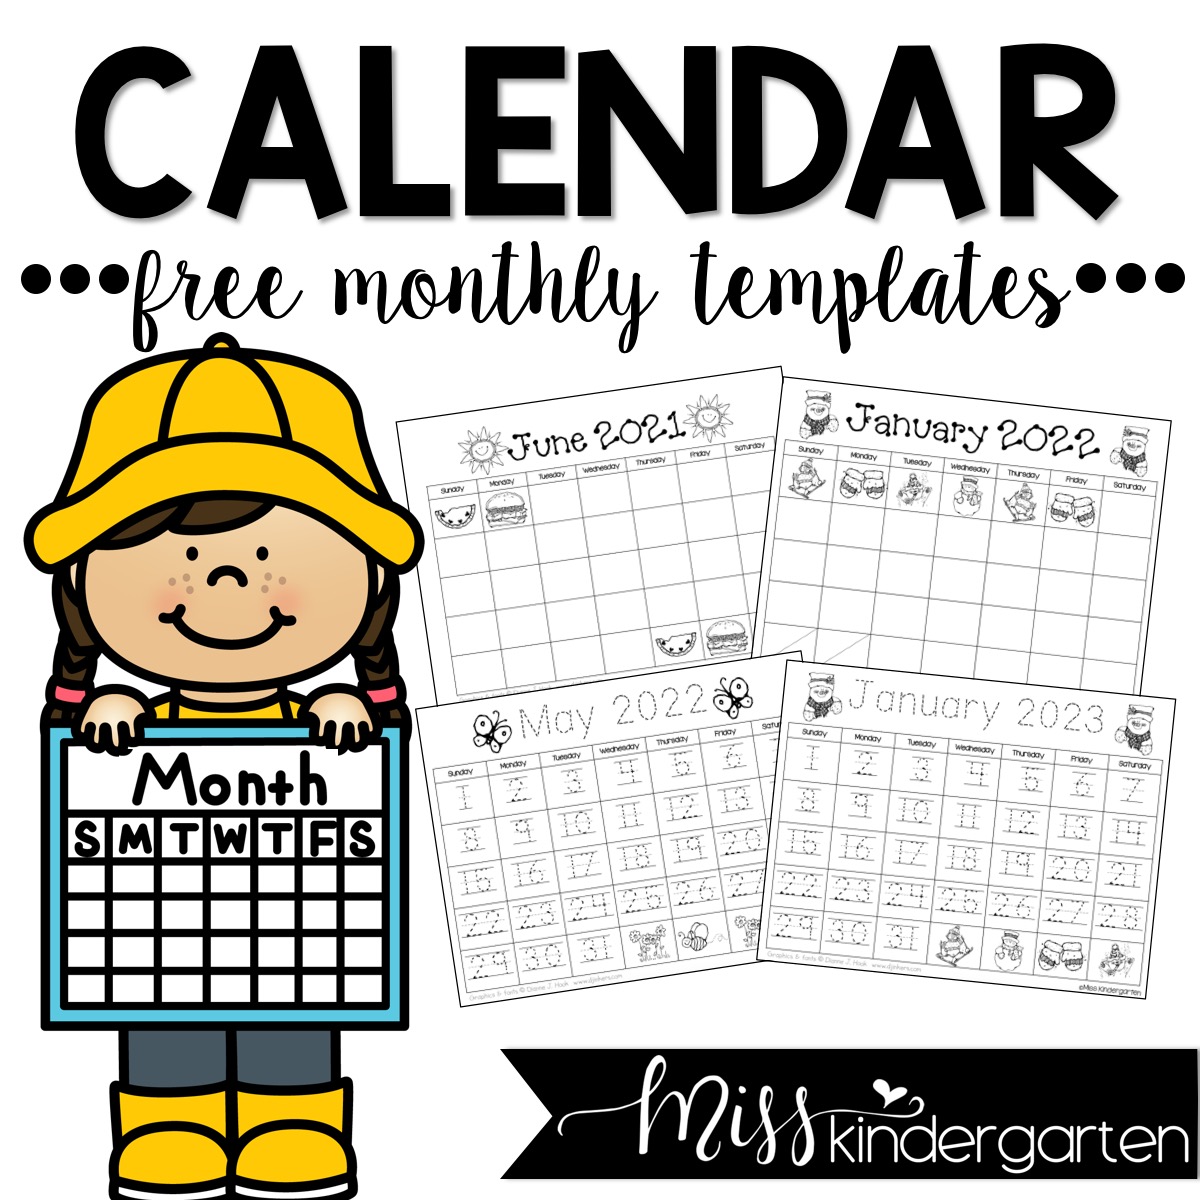 Free Calendar Templates 2022 Free Calendar Templates 2022 And 2023 - Miss Kindergarten